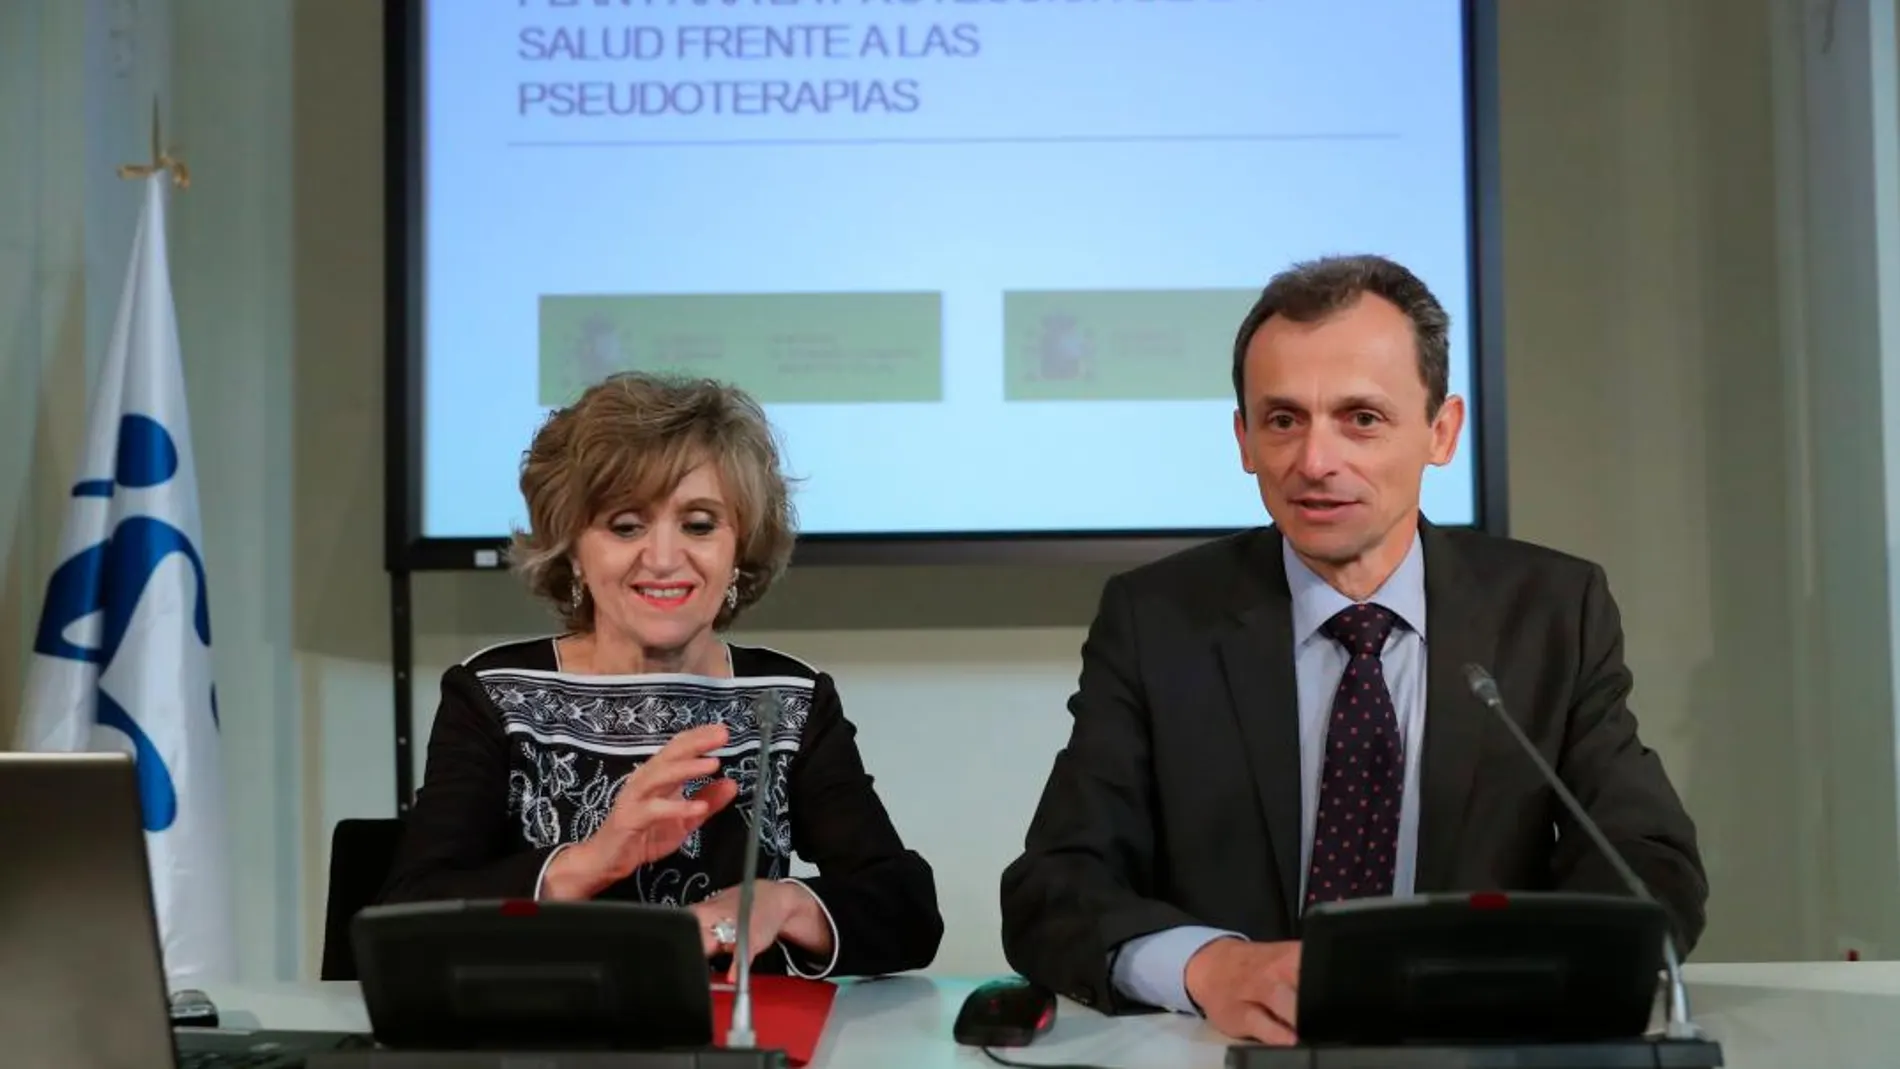 El ministro de Ciencia, Innovación y Universidades Pedro Duque y la Ministra de Sanidad, María Luisa Carcedo, durante la presentación del Plan para la Protección de la Salud frente a las pseudoterapias